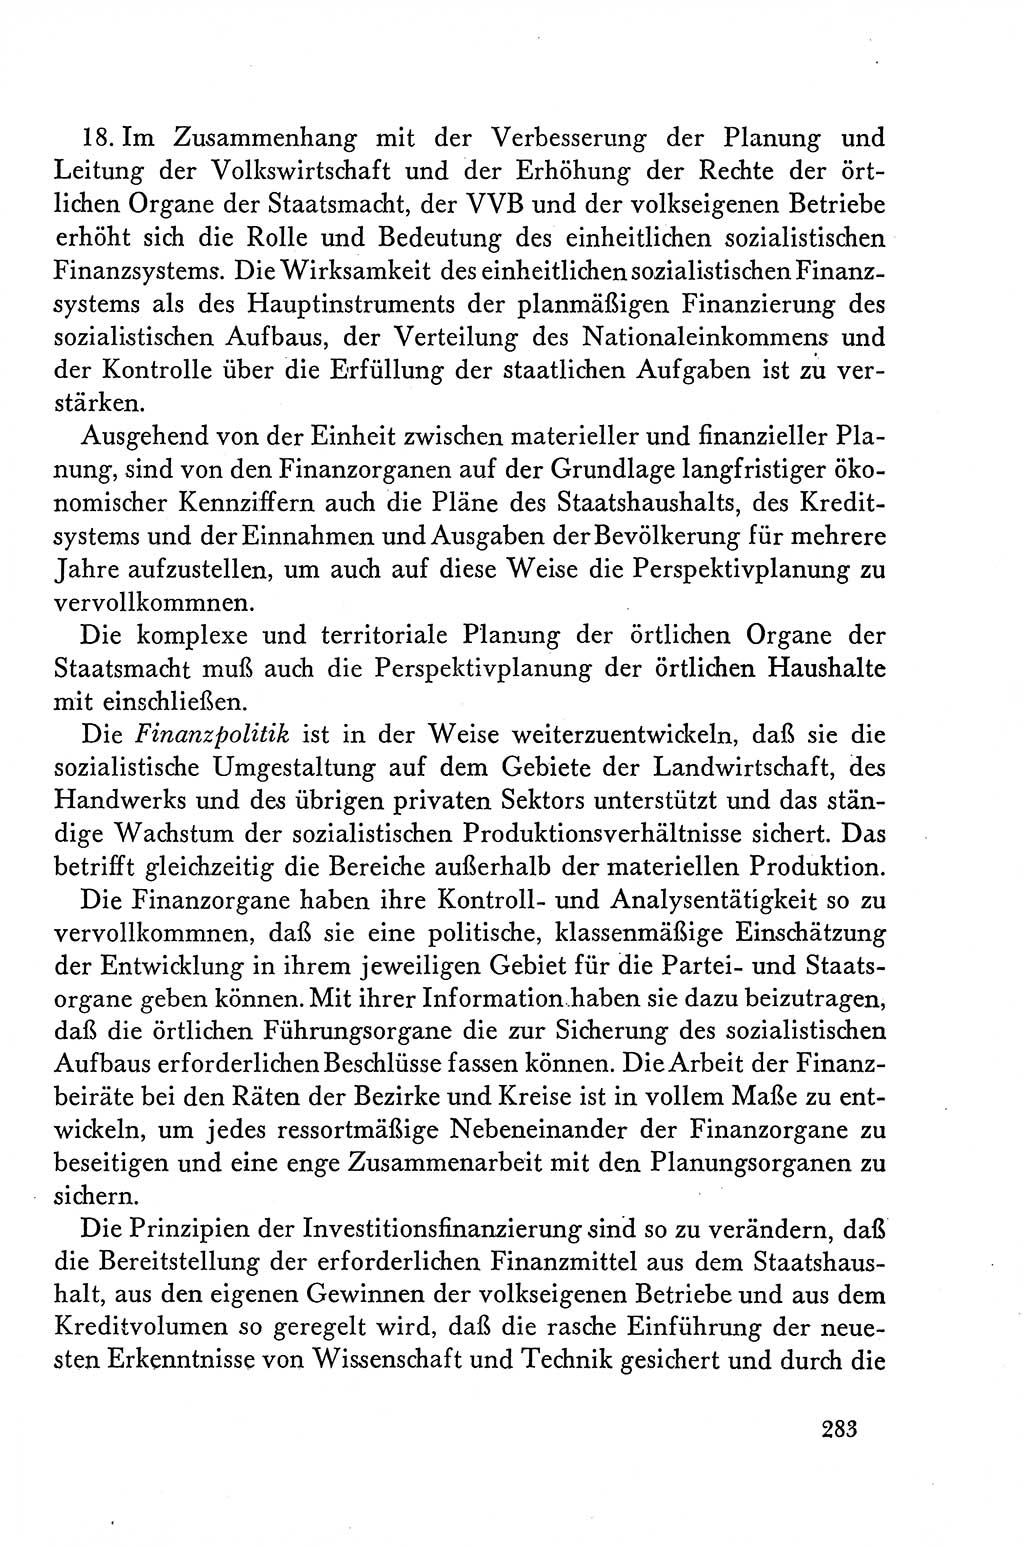 Dokumente der Sozialistischen Einheitspartei Deutschlands (SED) [Deutsche Demokratische Republik (DDR)] 1958-1959, Seite 283 (Dok. SED DDR 1958-1959, S. 283)